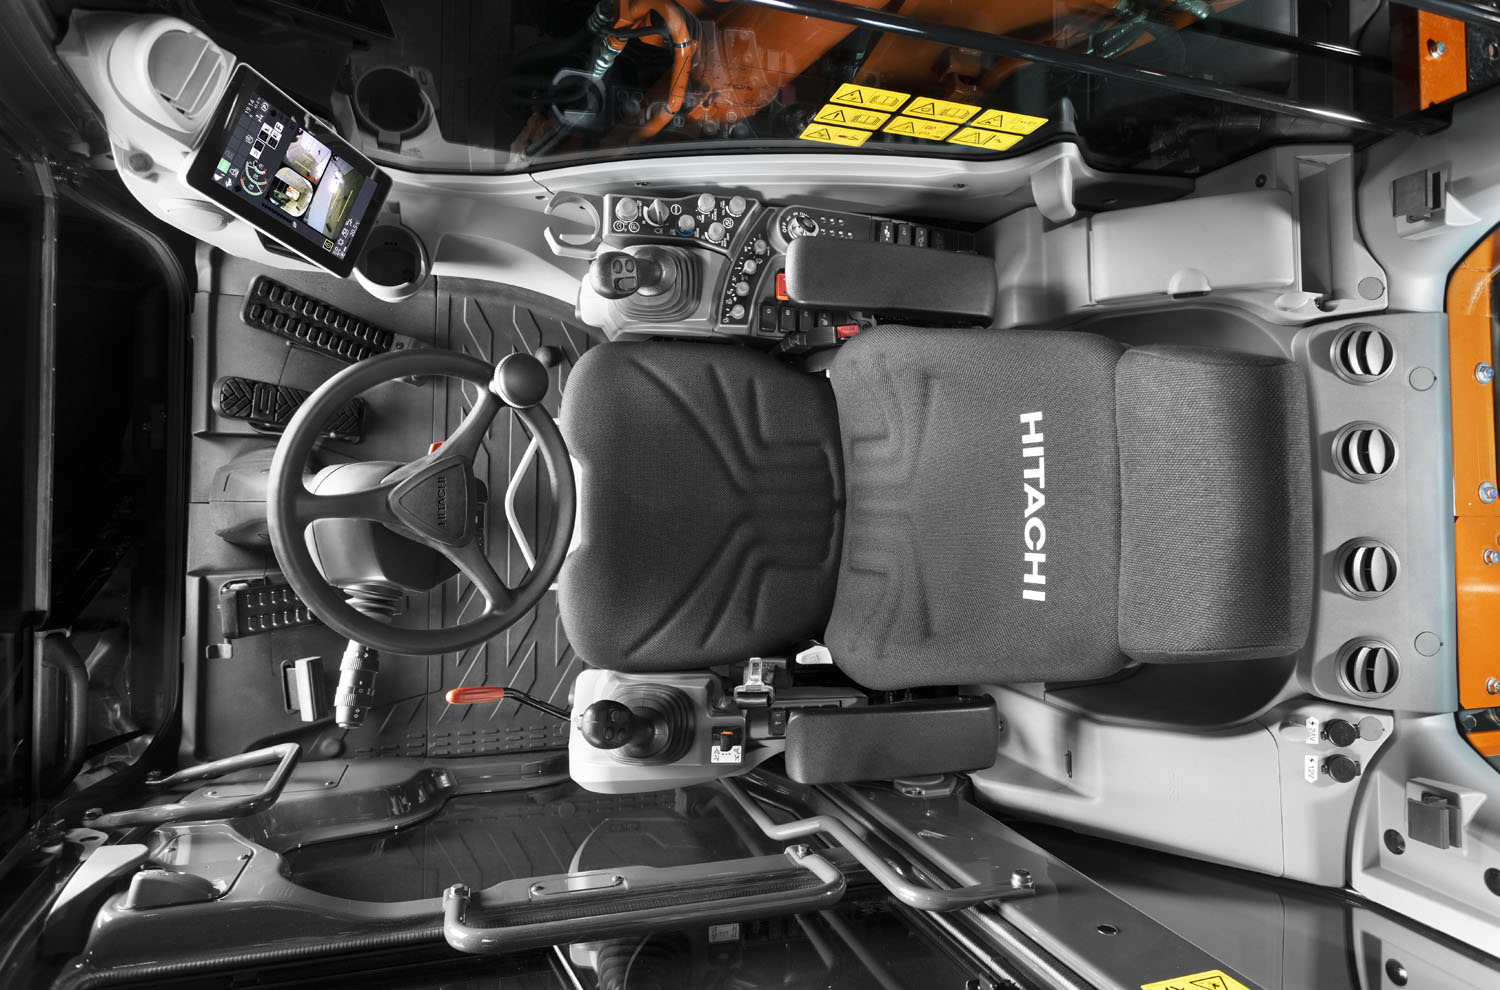 La cabina dello ZX135W-7 si distingue per l'ergonomia